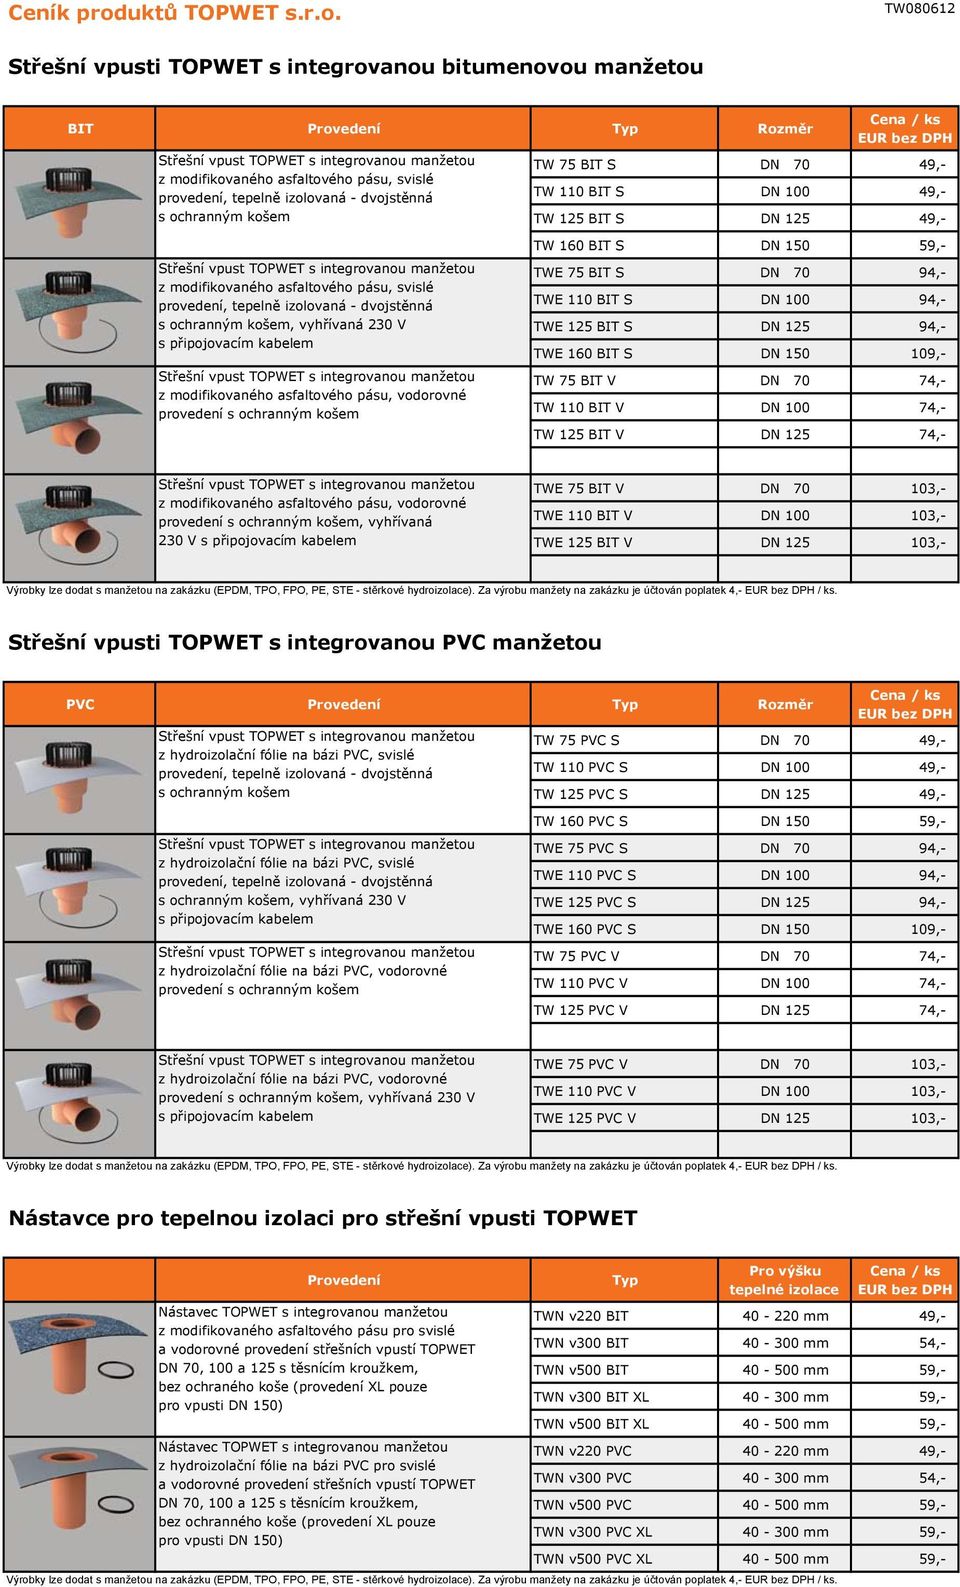 Střešní vpusti TOPWET s integrovanou bitumenovou manžetou TW 75 BIT S DN 70 49,- TW 110 BIT S DN 100 49,- TW 125 BIT S DN 125 49,- BIT z modifikovaného asfaltového pásu, svislé provedení, tepelně